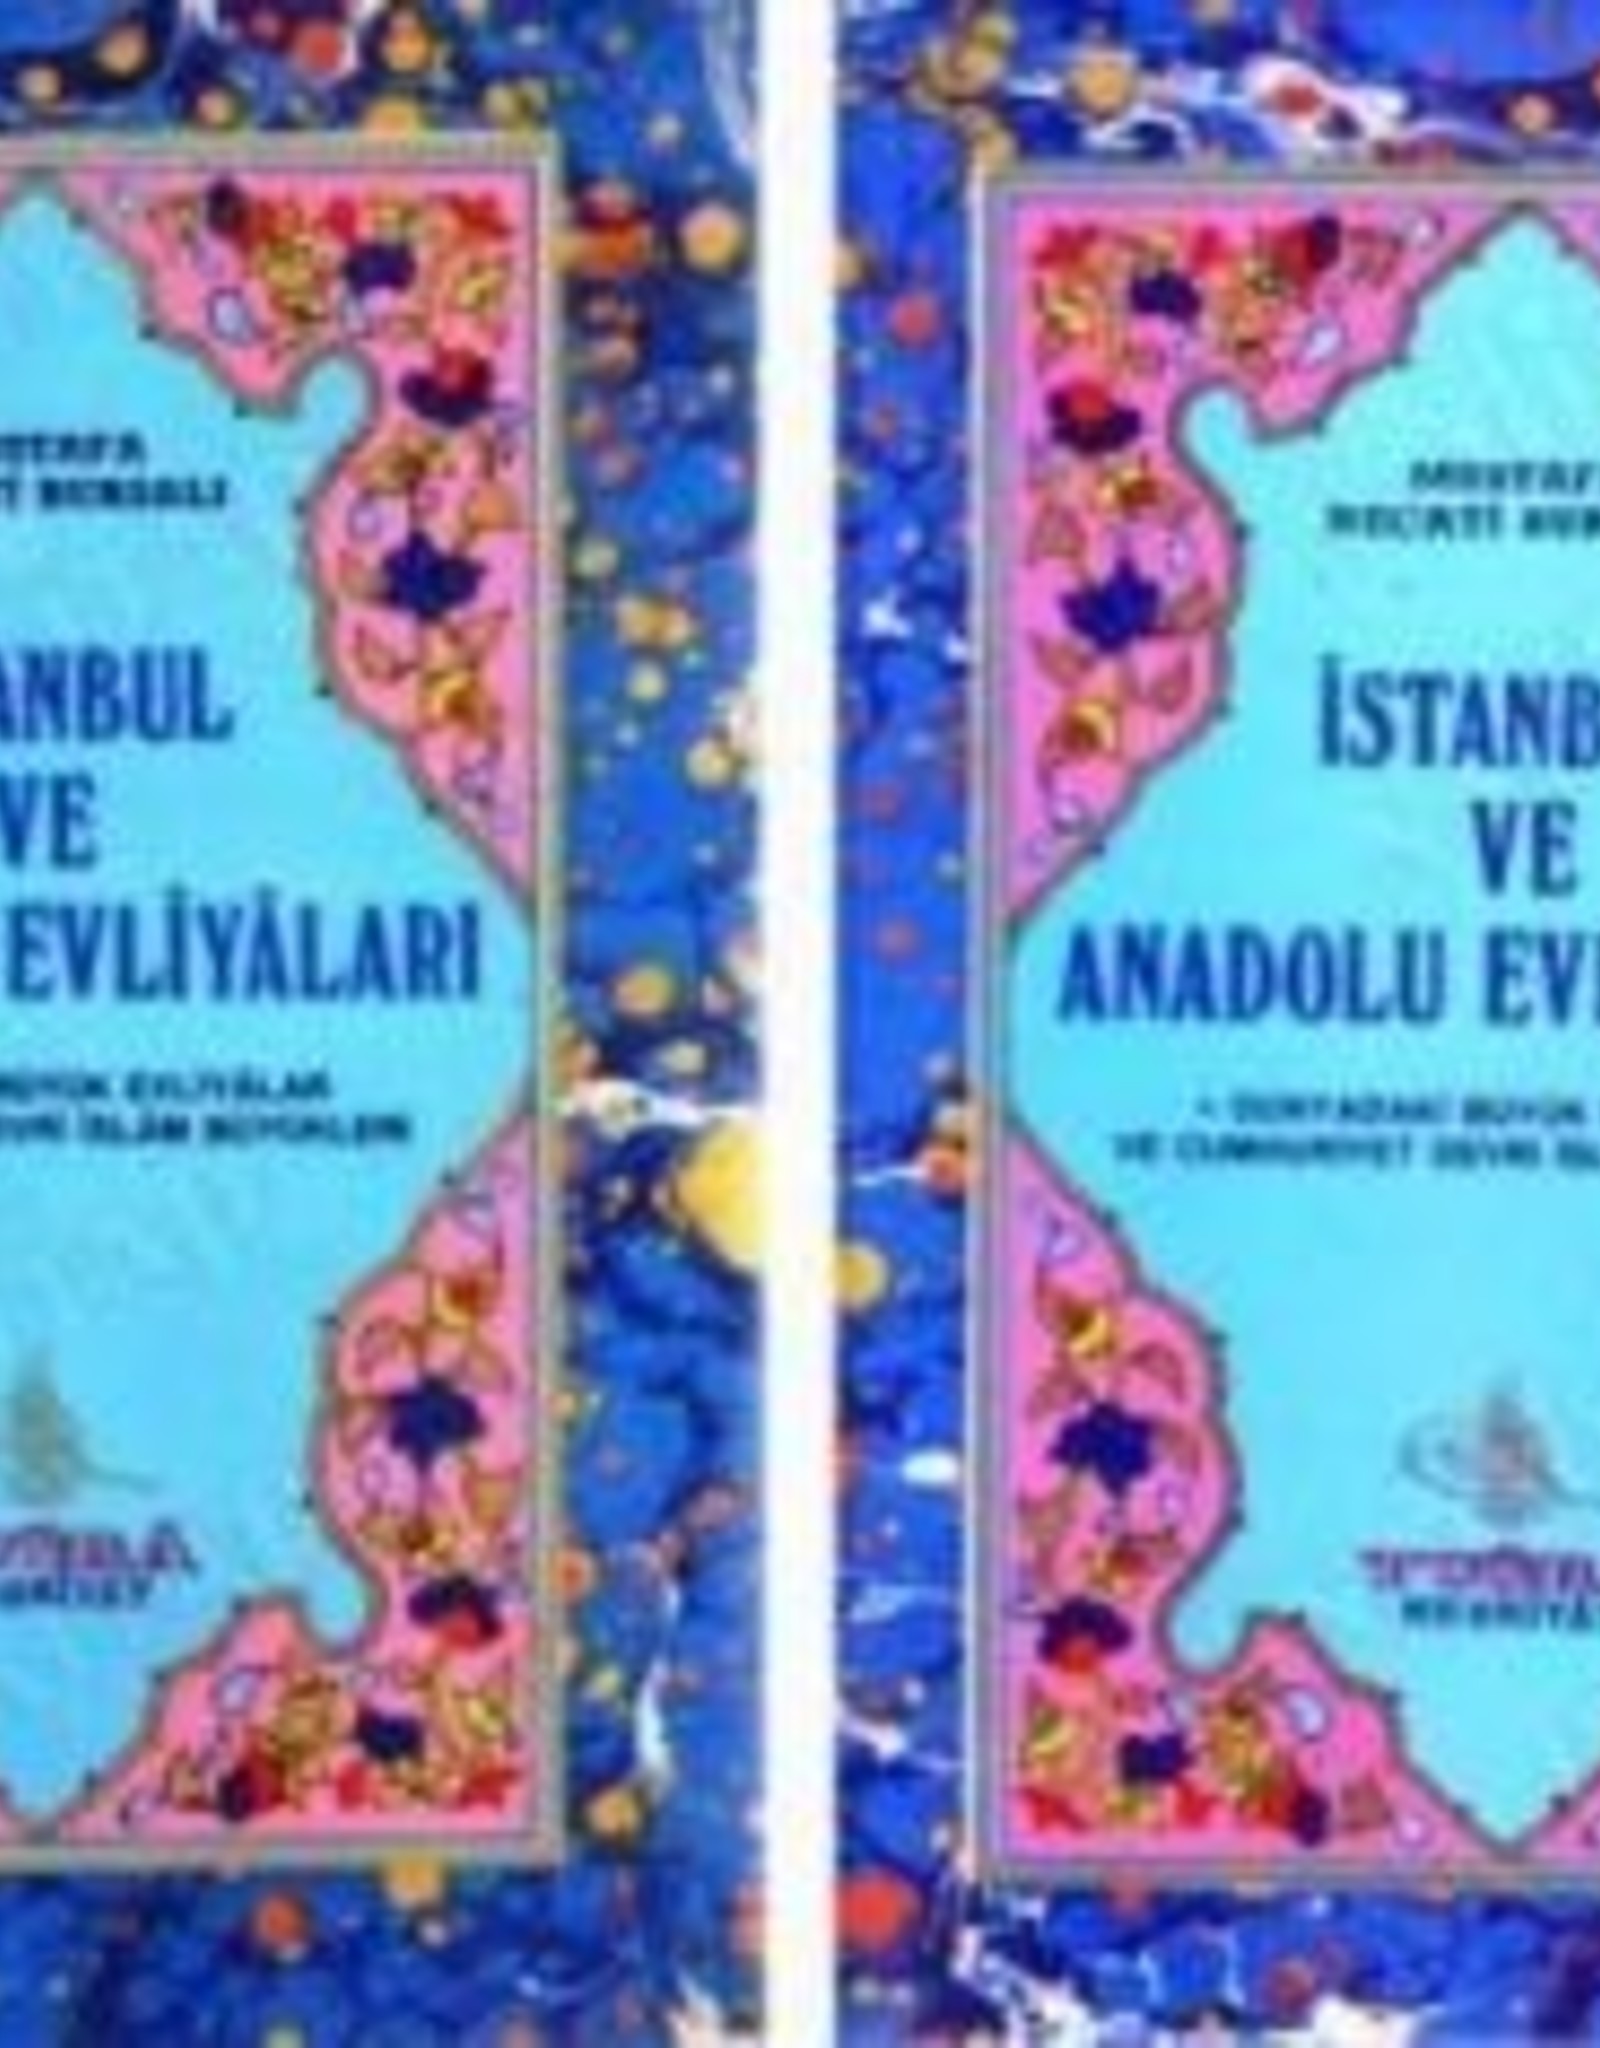 Istanbul ve Anadolu Evliyaları